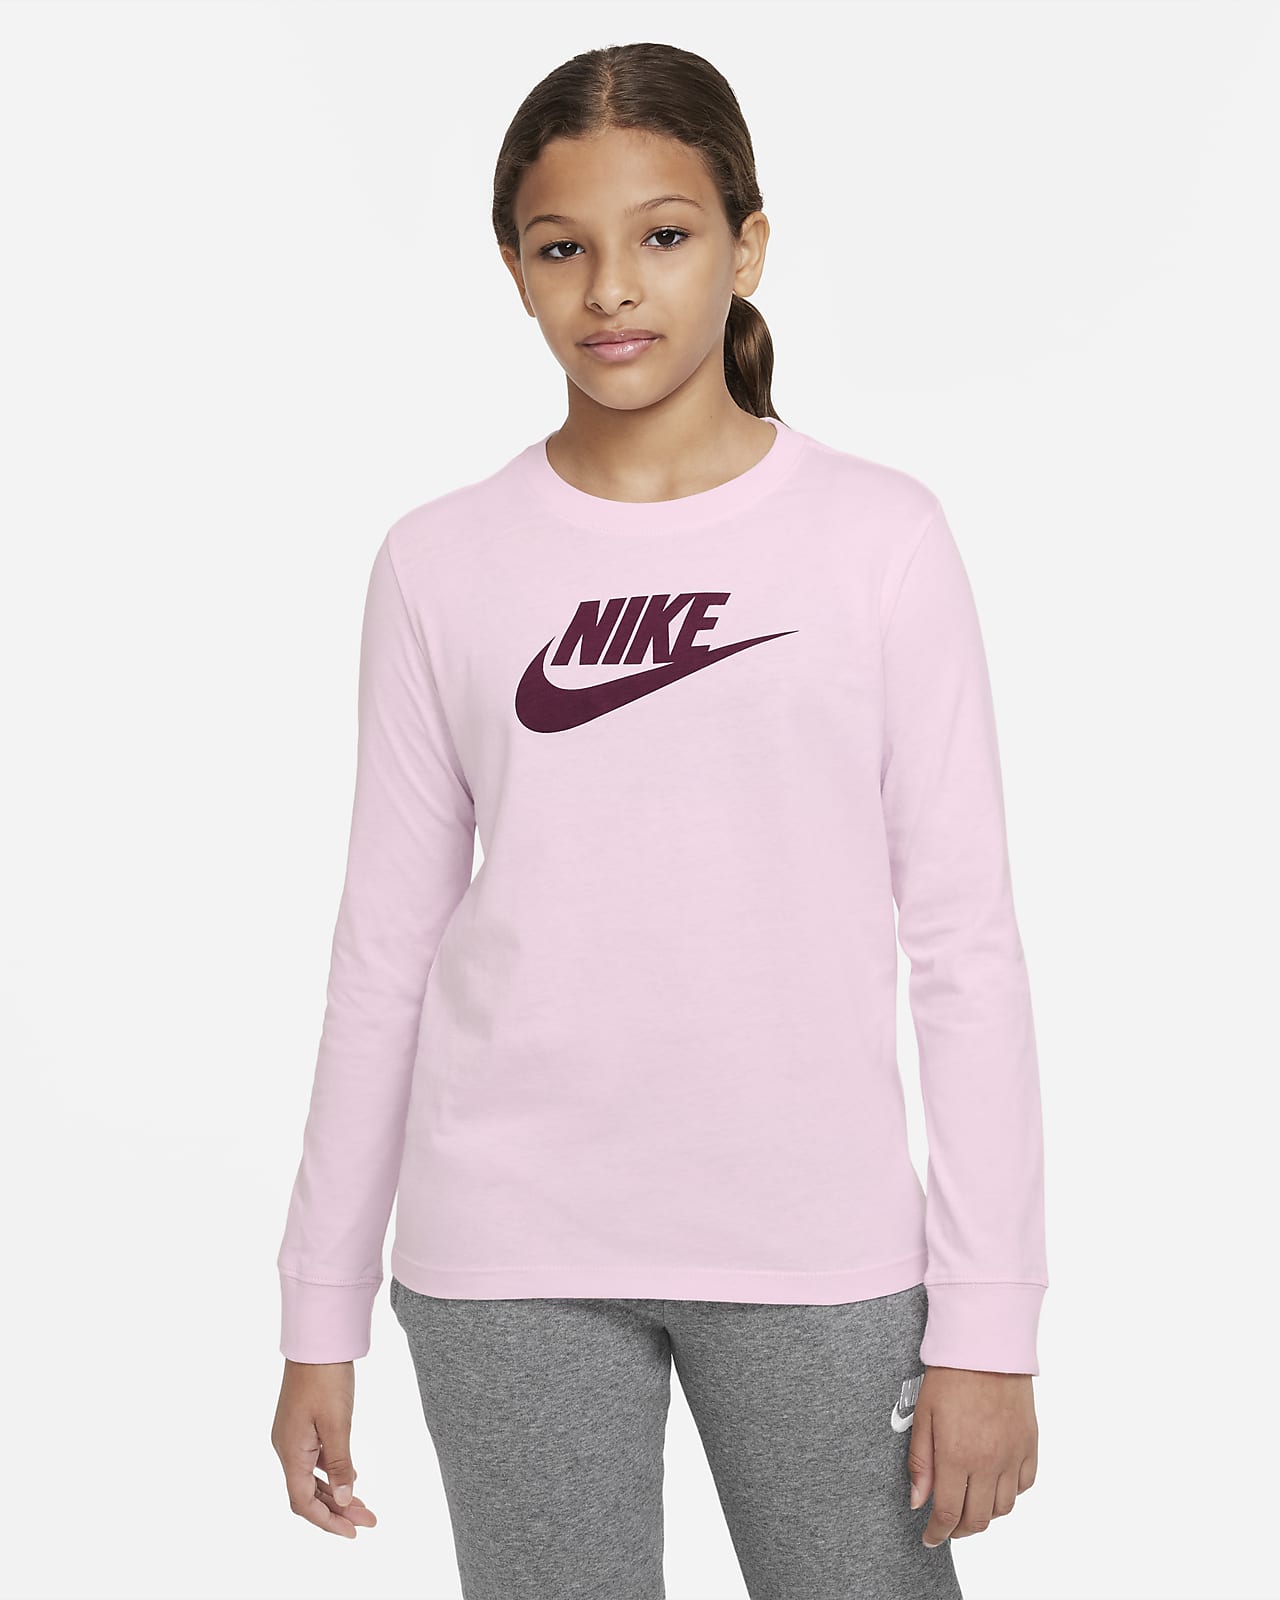 Tričko Nike Sportswear s dlouhým rukávem pro větší děti (dívky)